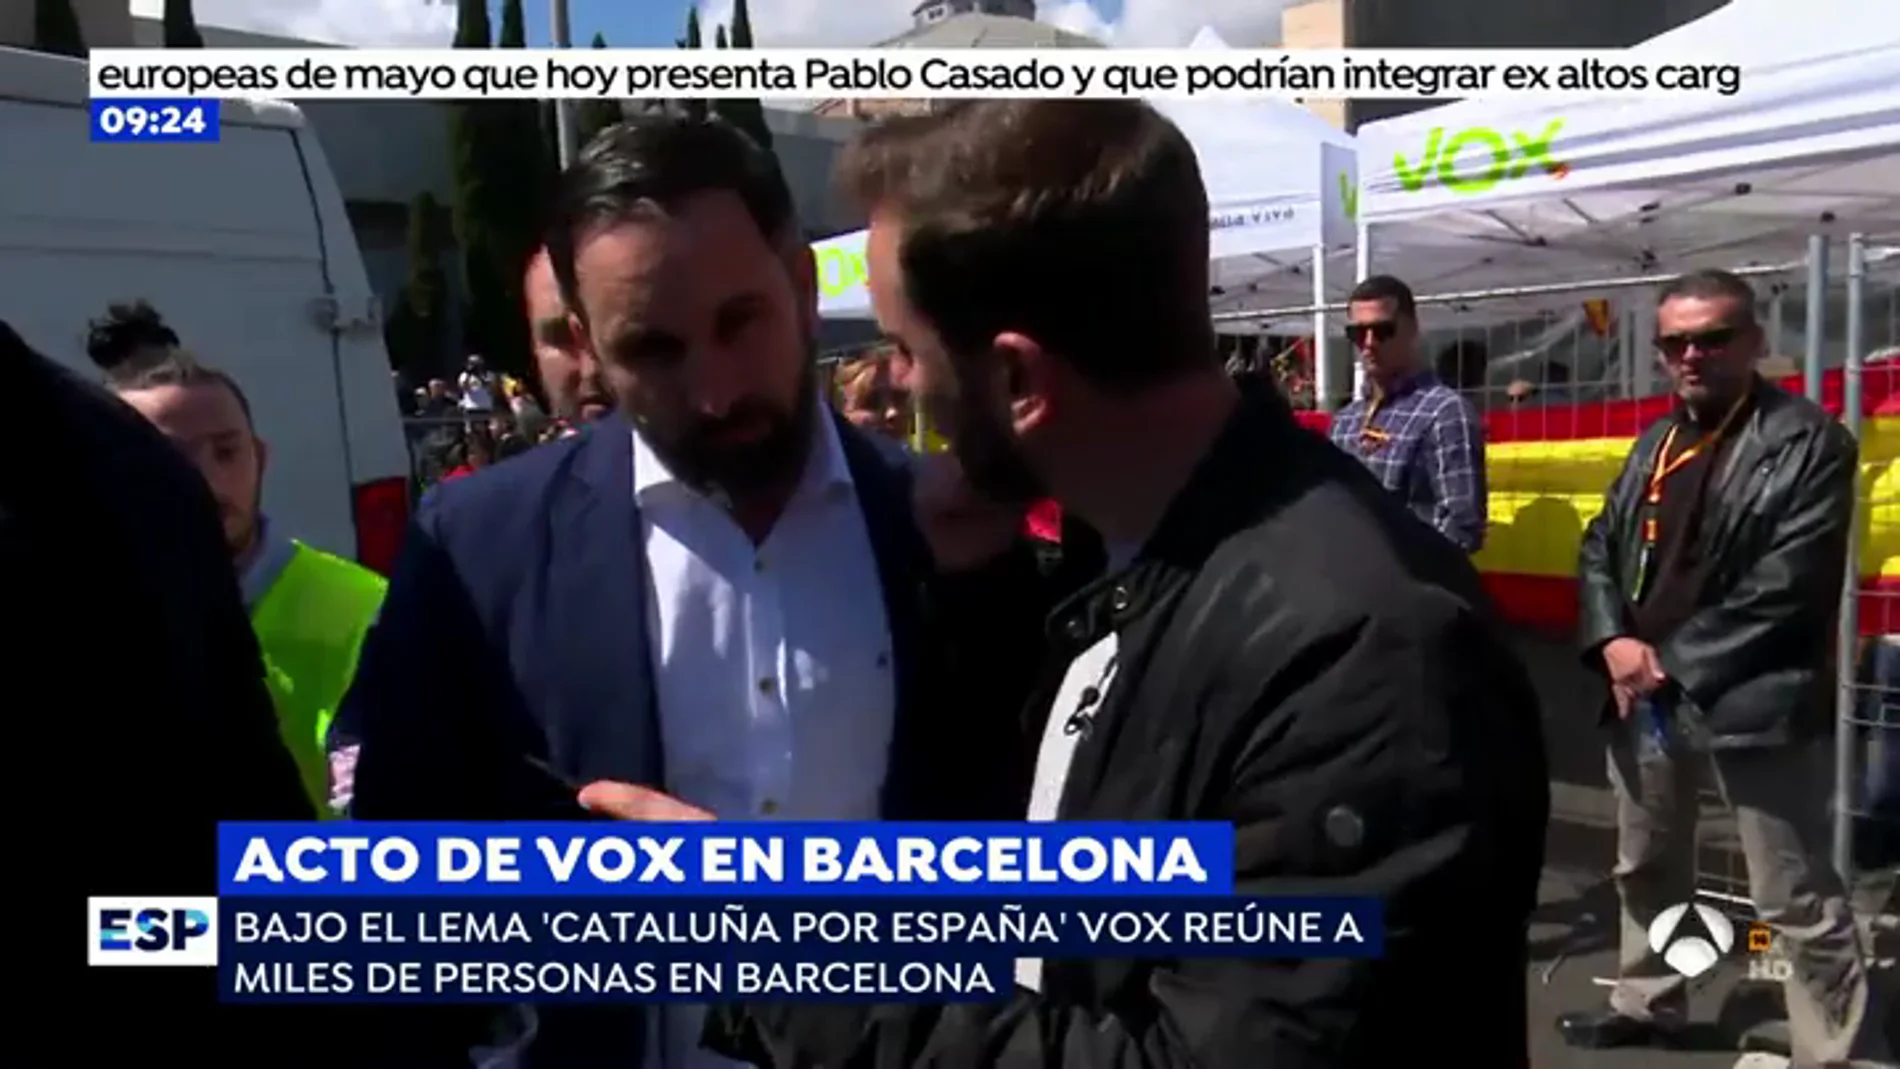 Santiago Abascal sobre las agresiones contra el acto de Vox en Barcelona: "Es una demostración del odio"